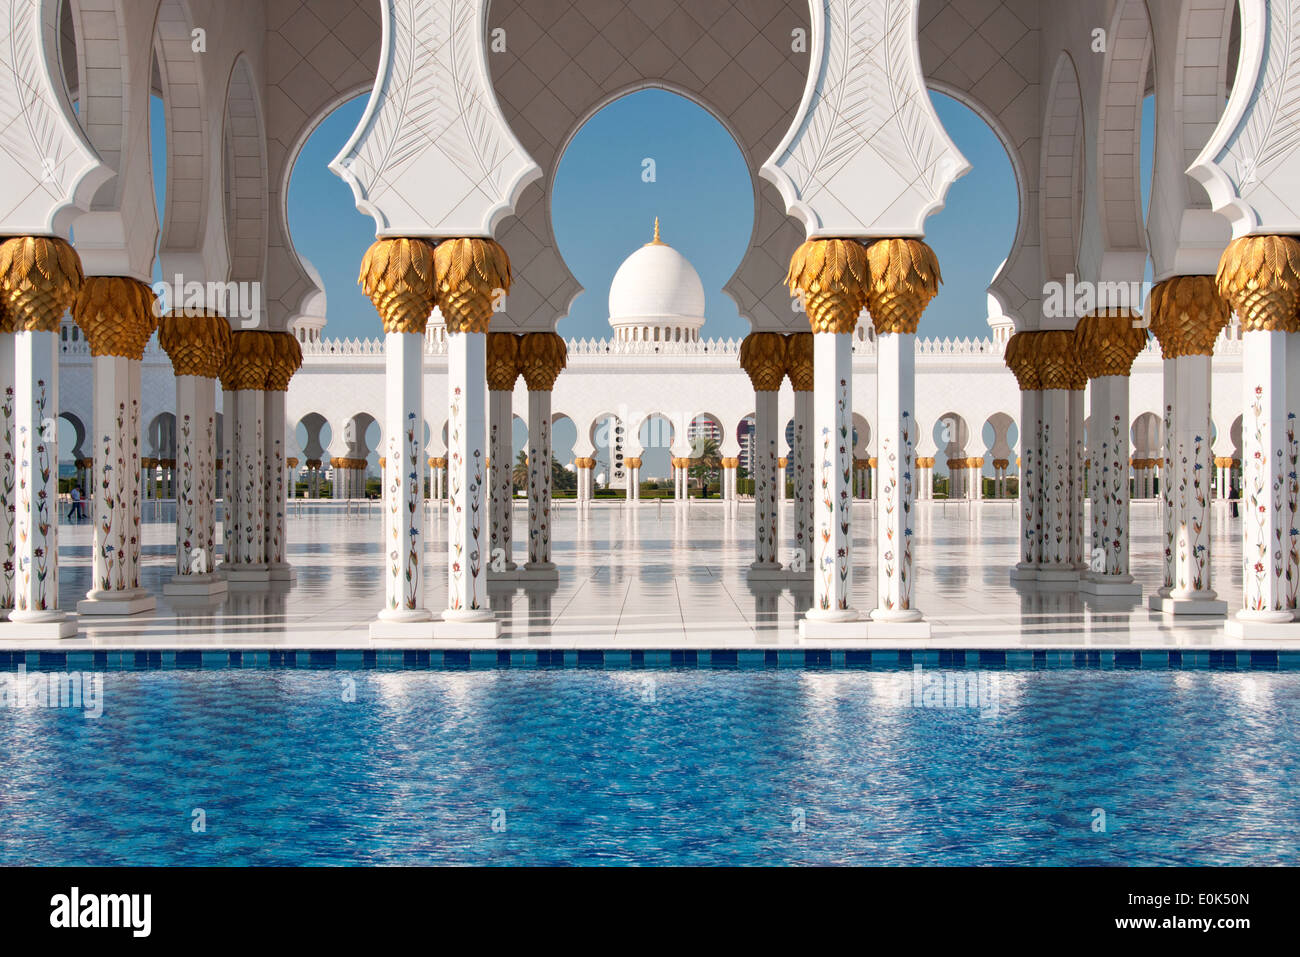 Architekturdetail an der Sheikh Zayed Grand Mosque, Abu Dhabi, Vereinigte Arabische Emirate, Naher Osten Stockfoto